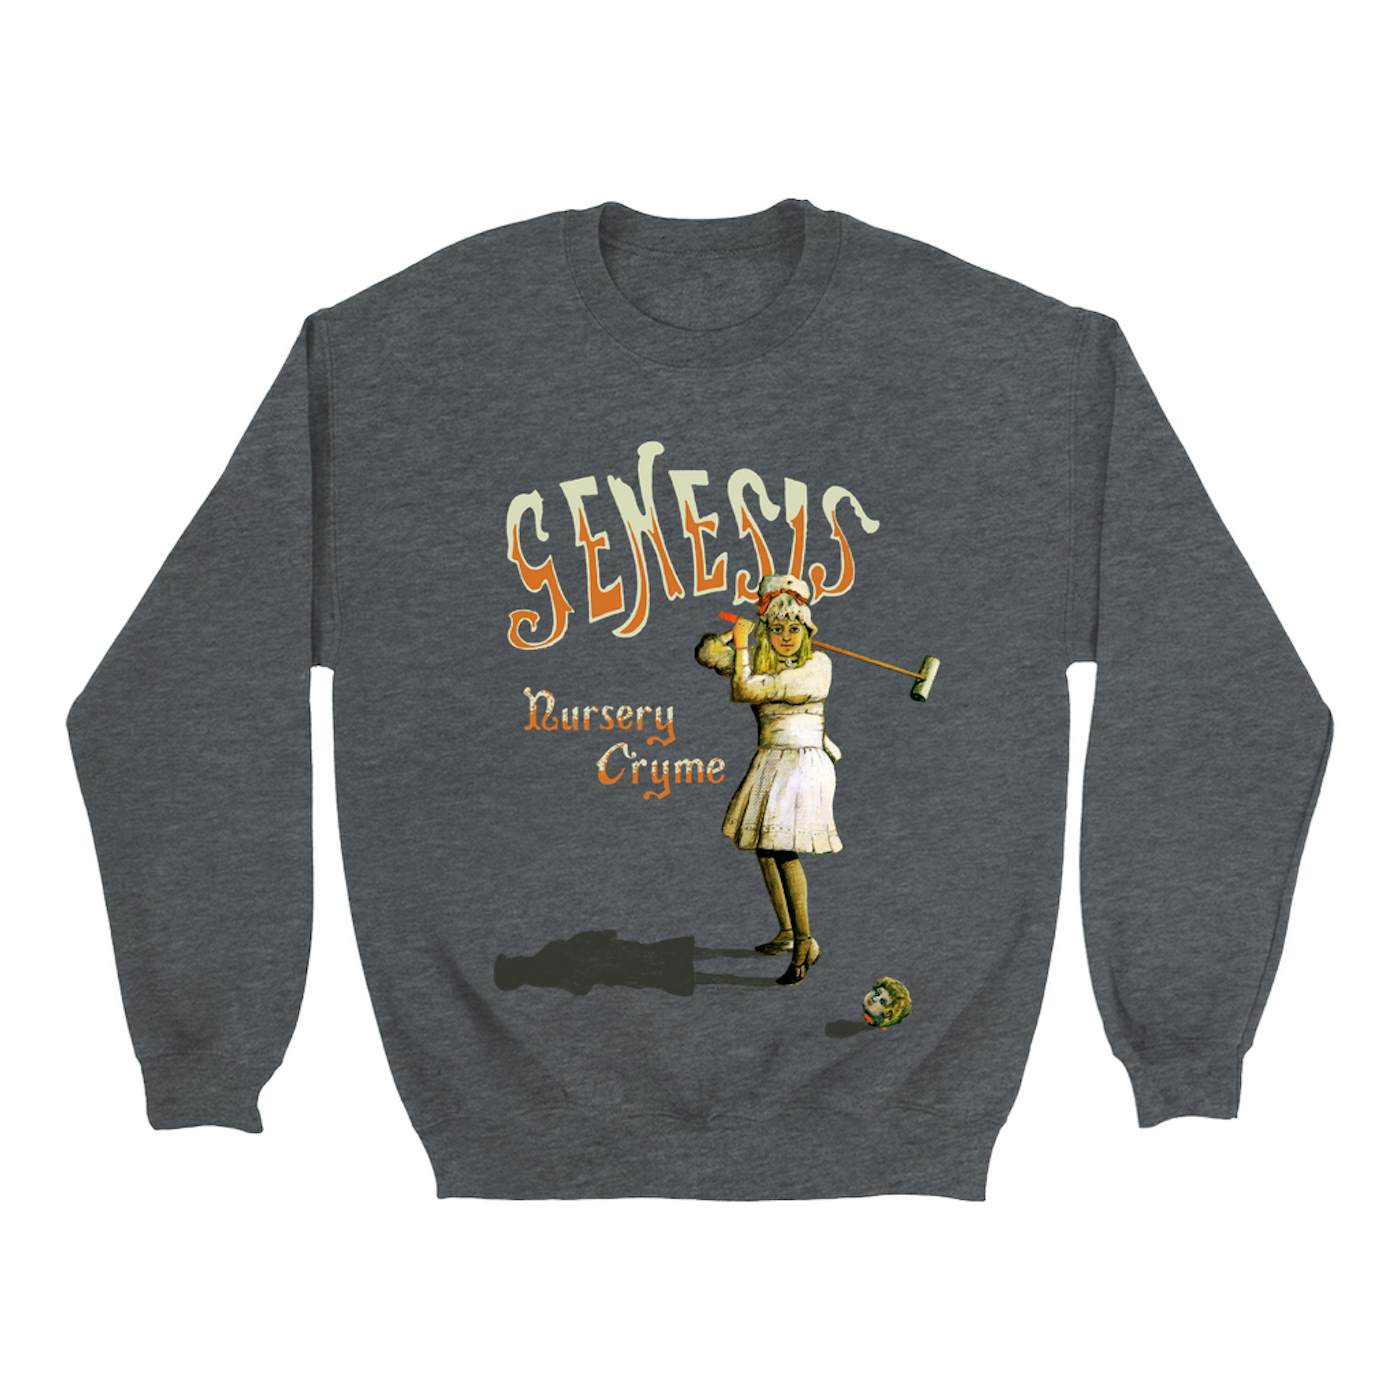 Genesis Sweatshirt | Nursery Cryme Album Genesis Sweatshirt